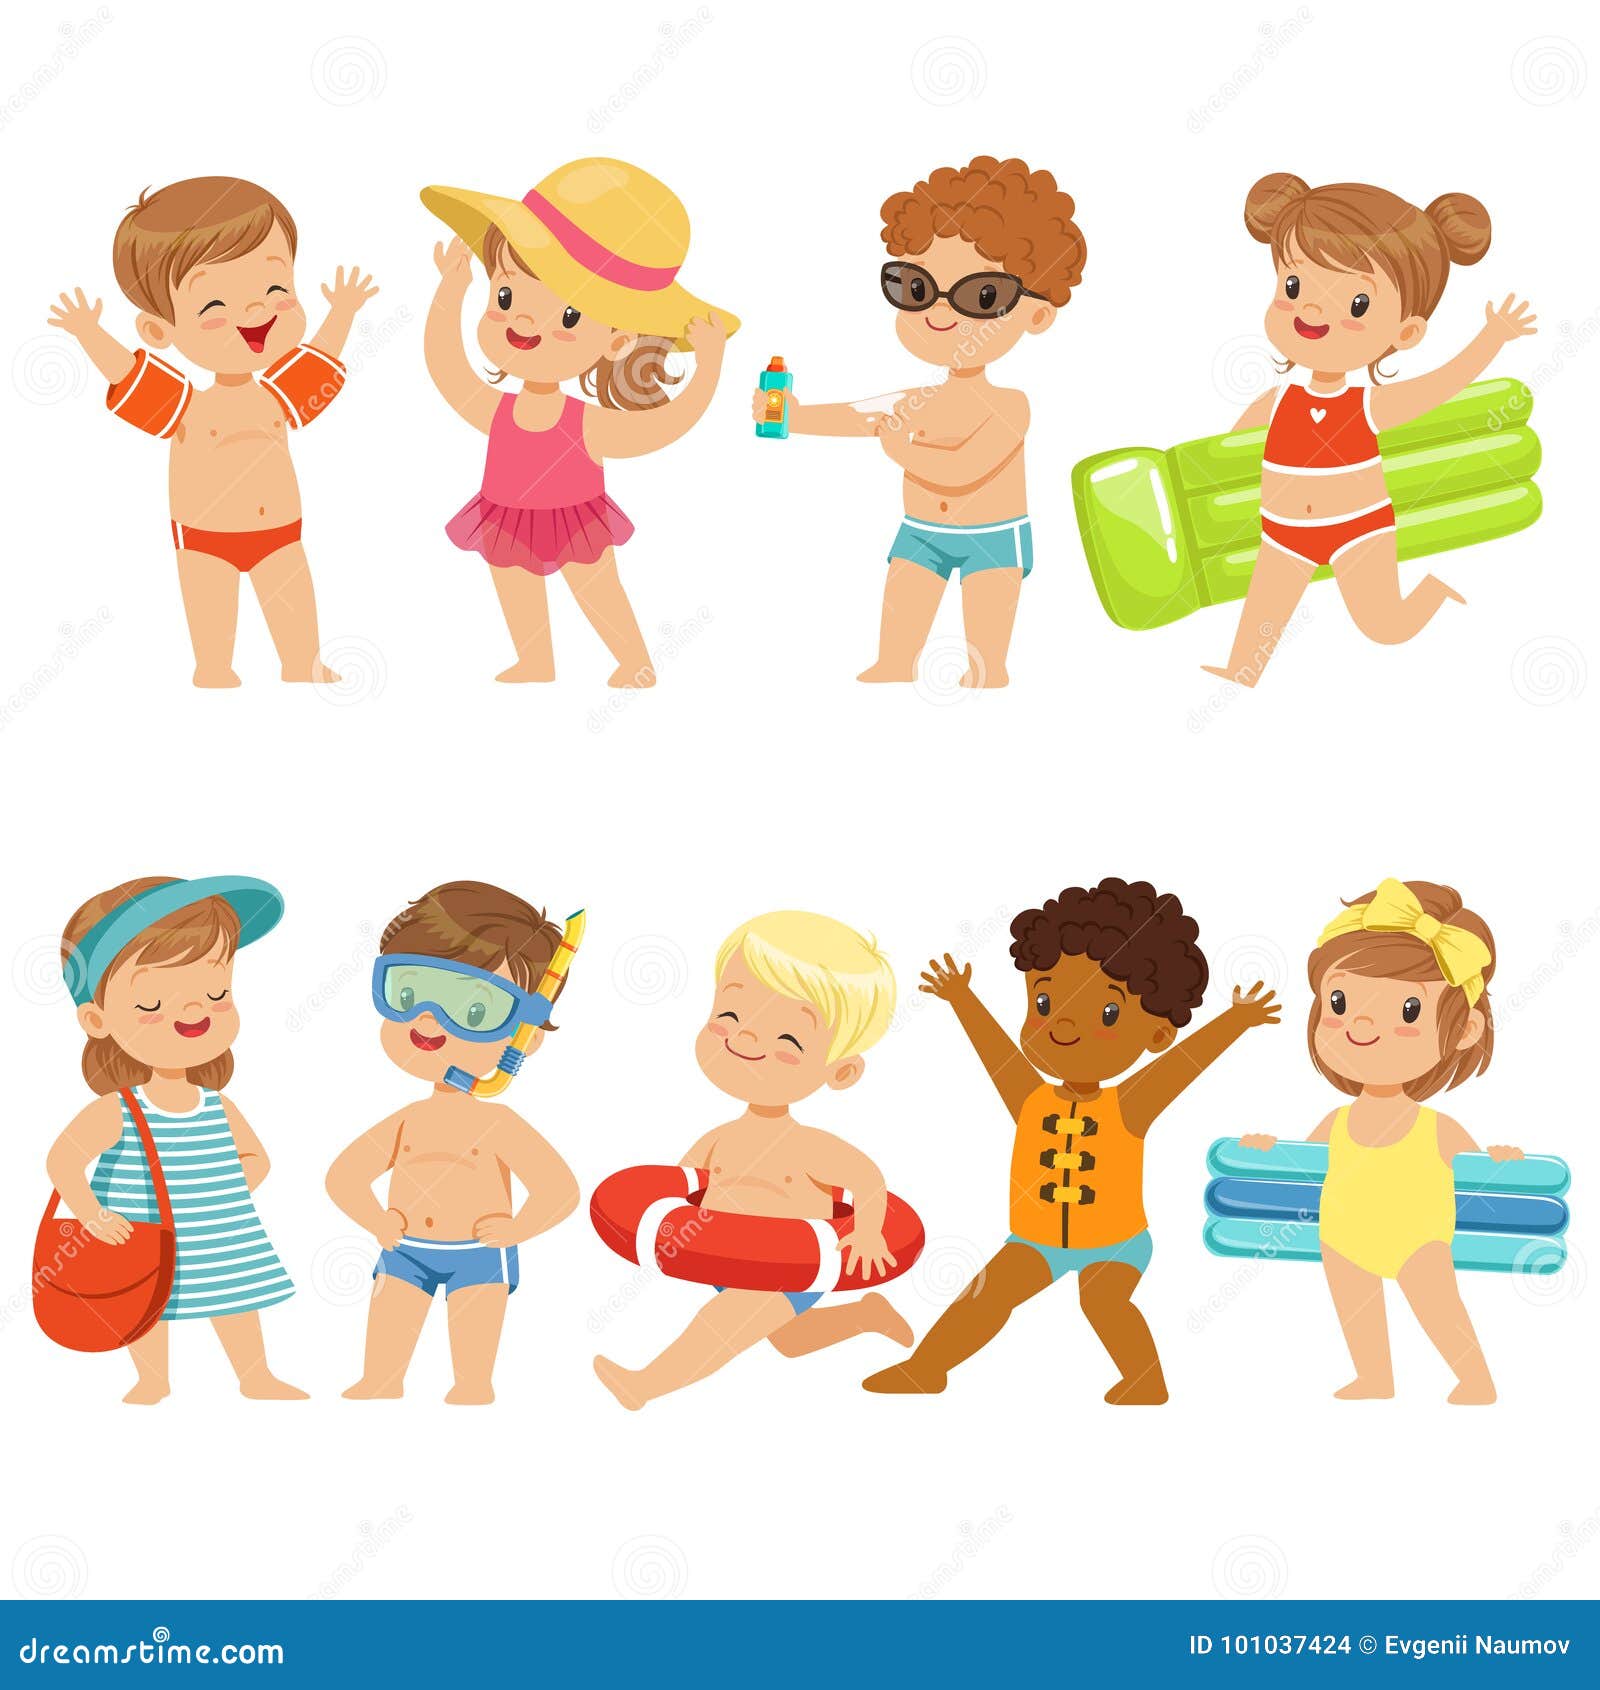 Children Kids Clipart-kids enjoying summer fun at the beach clipart